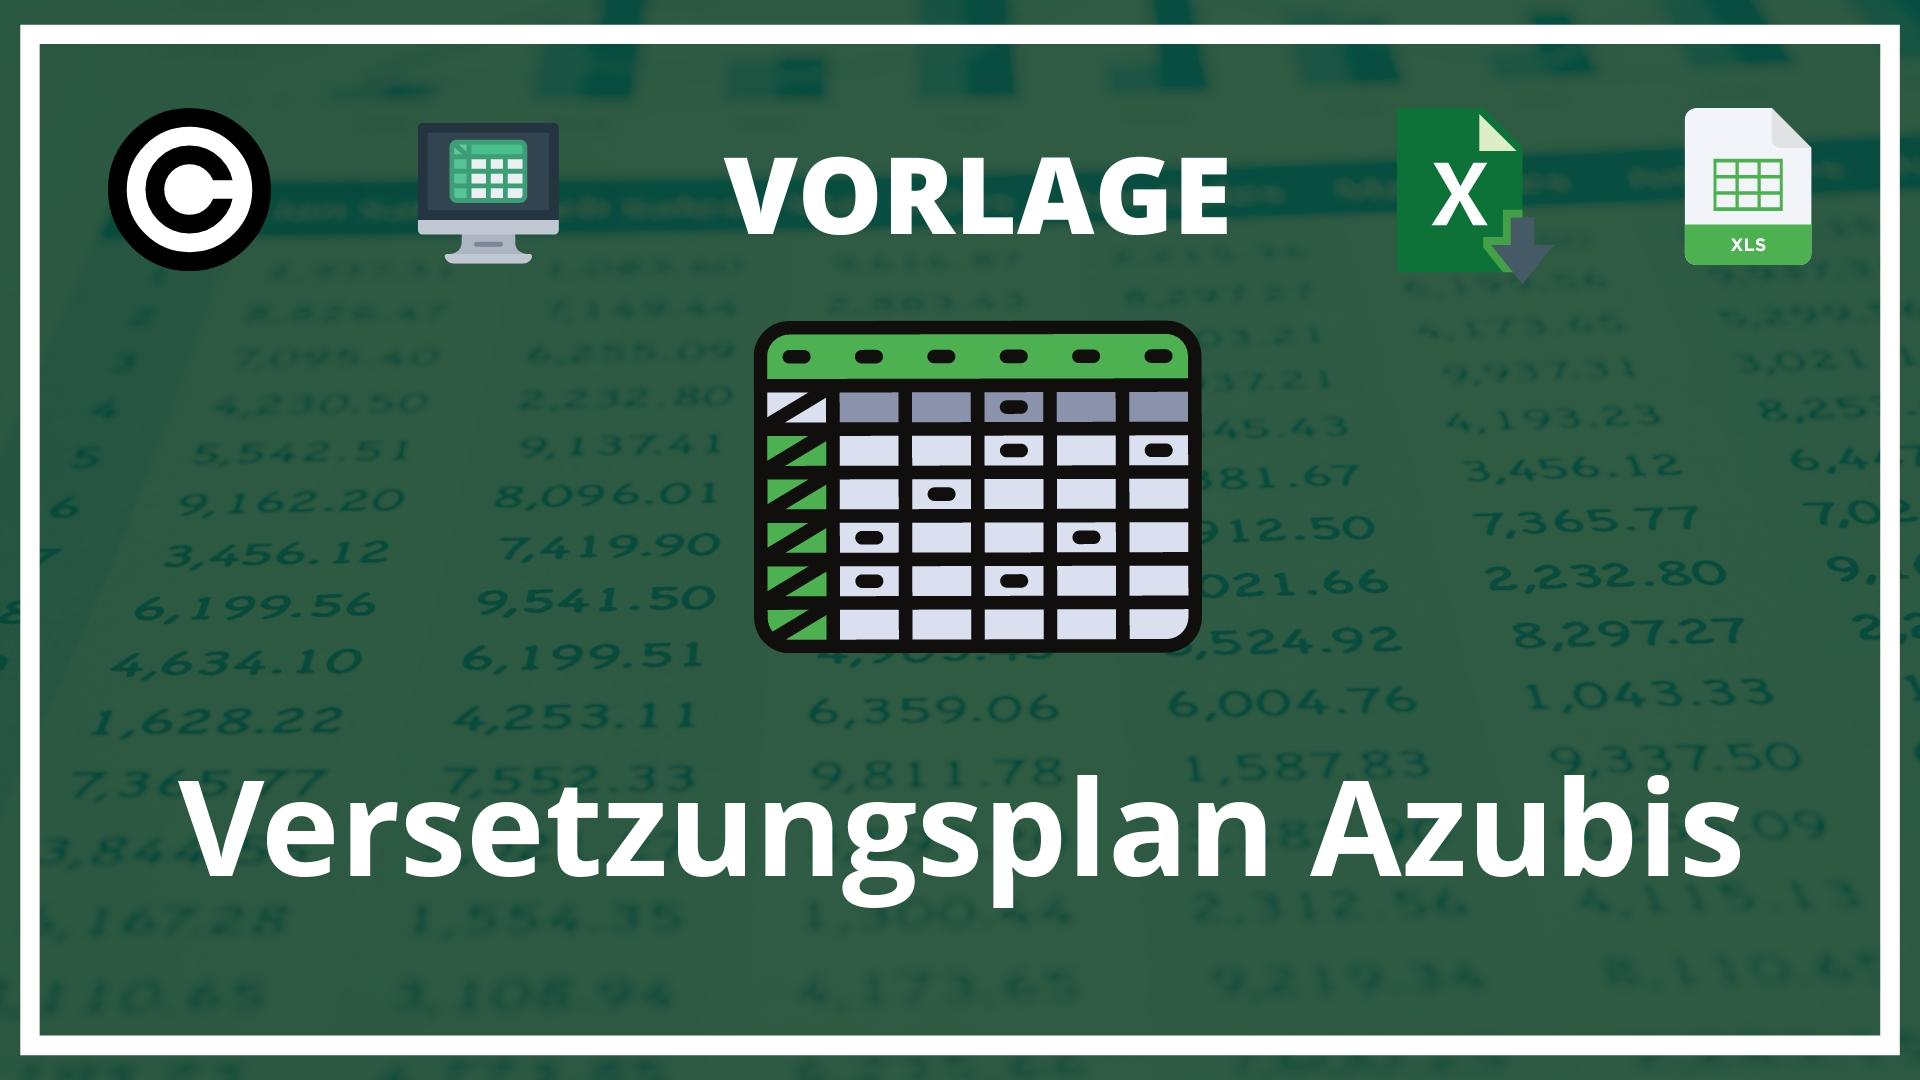 Versetzungsplan Azubis Vorlage Excel